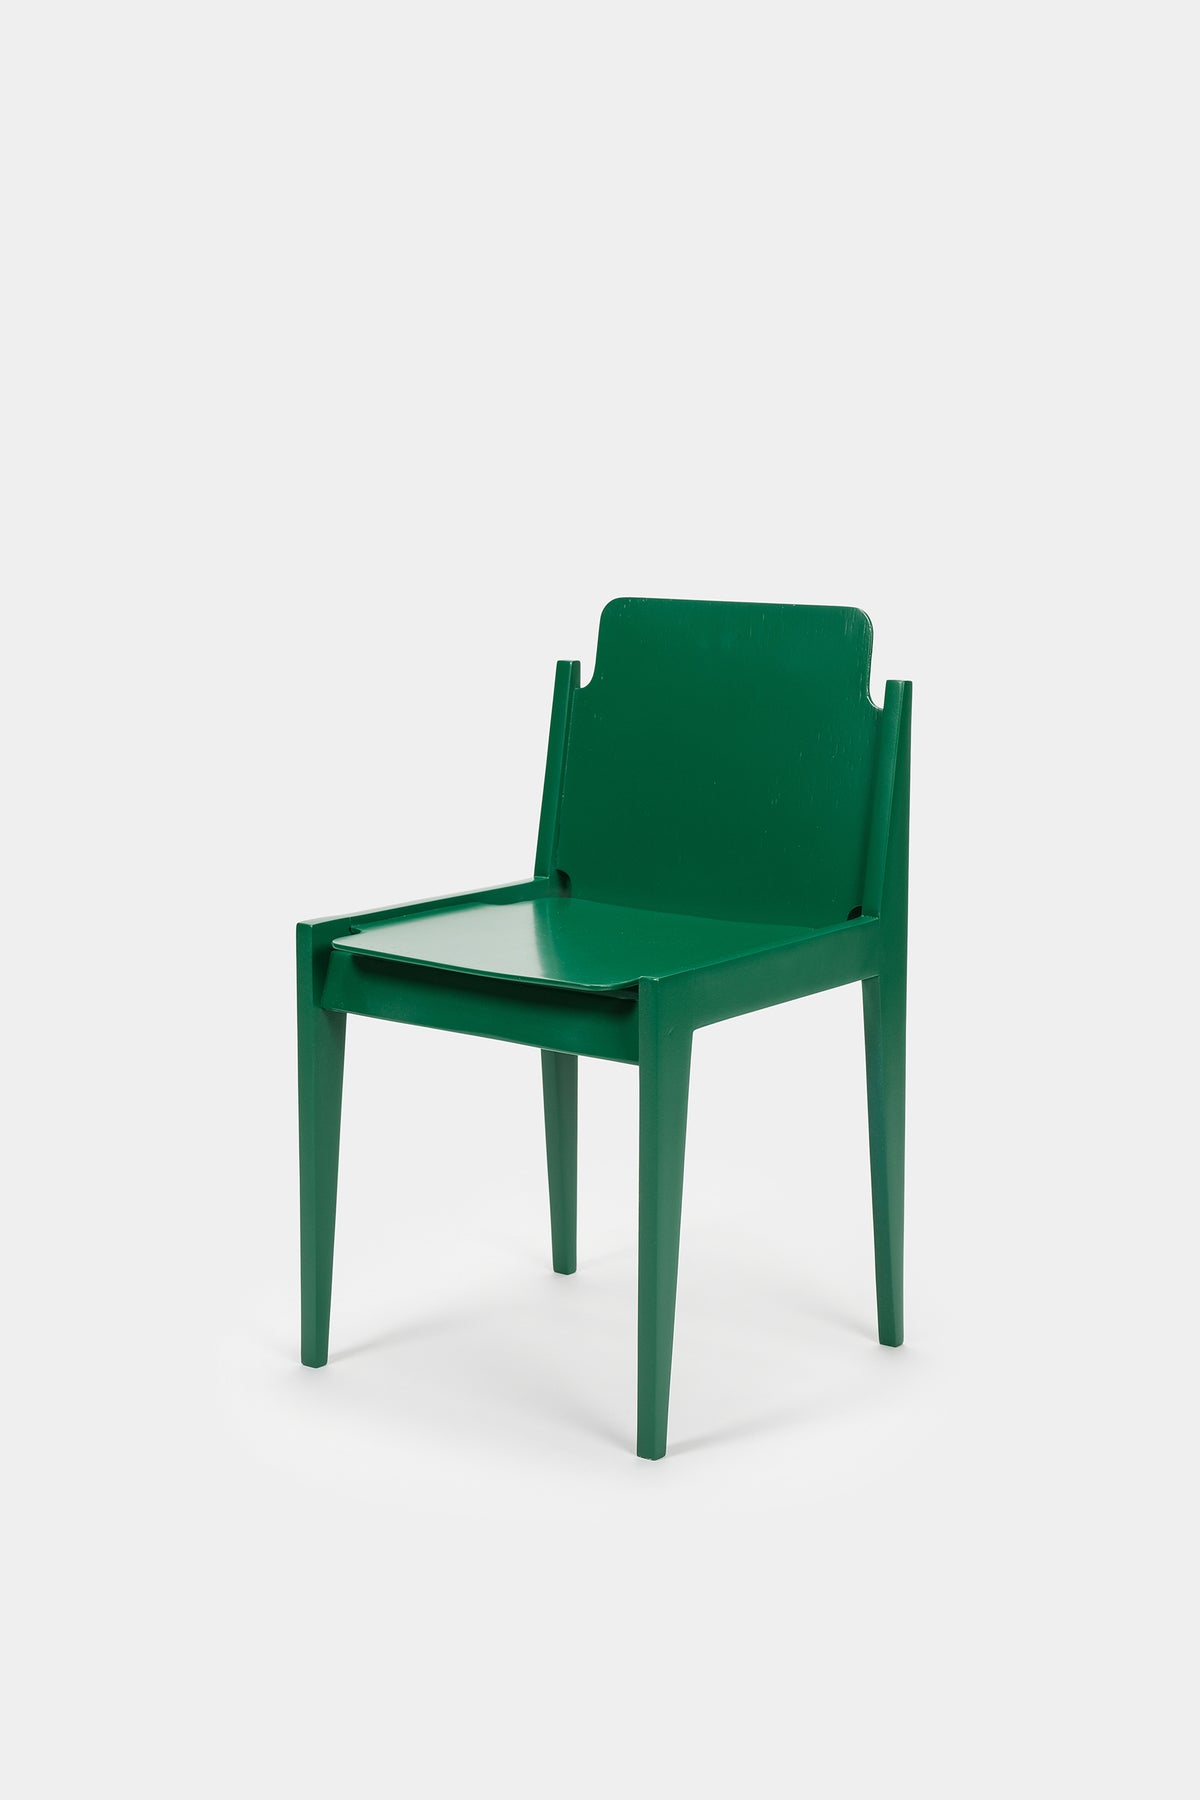 Beechwood Chair, Germany, 50s